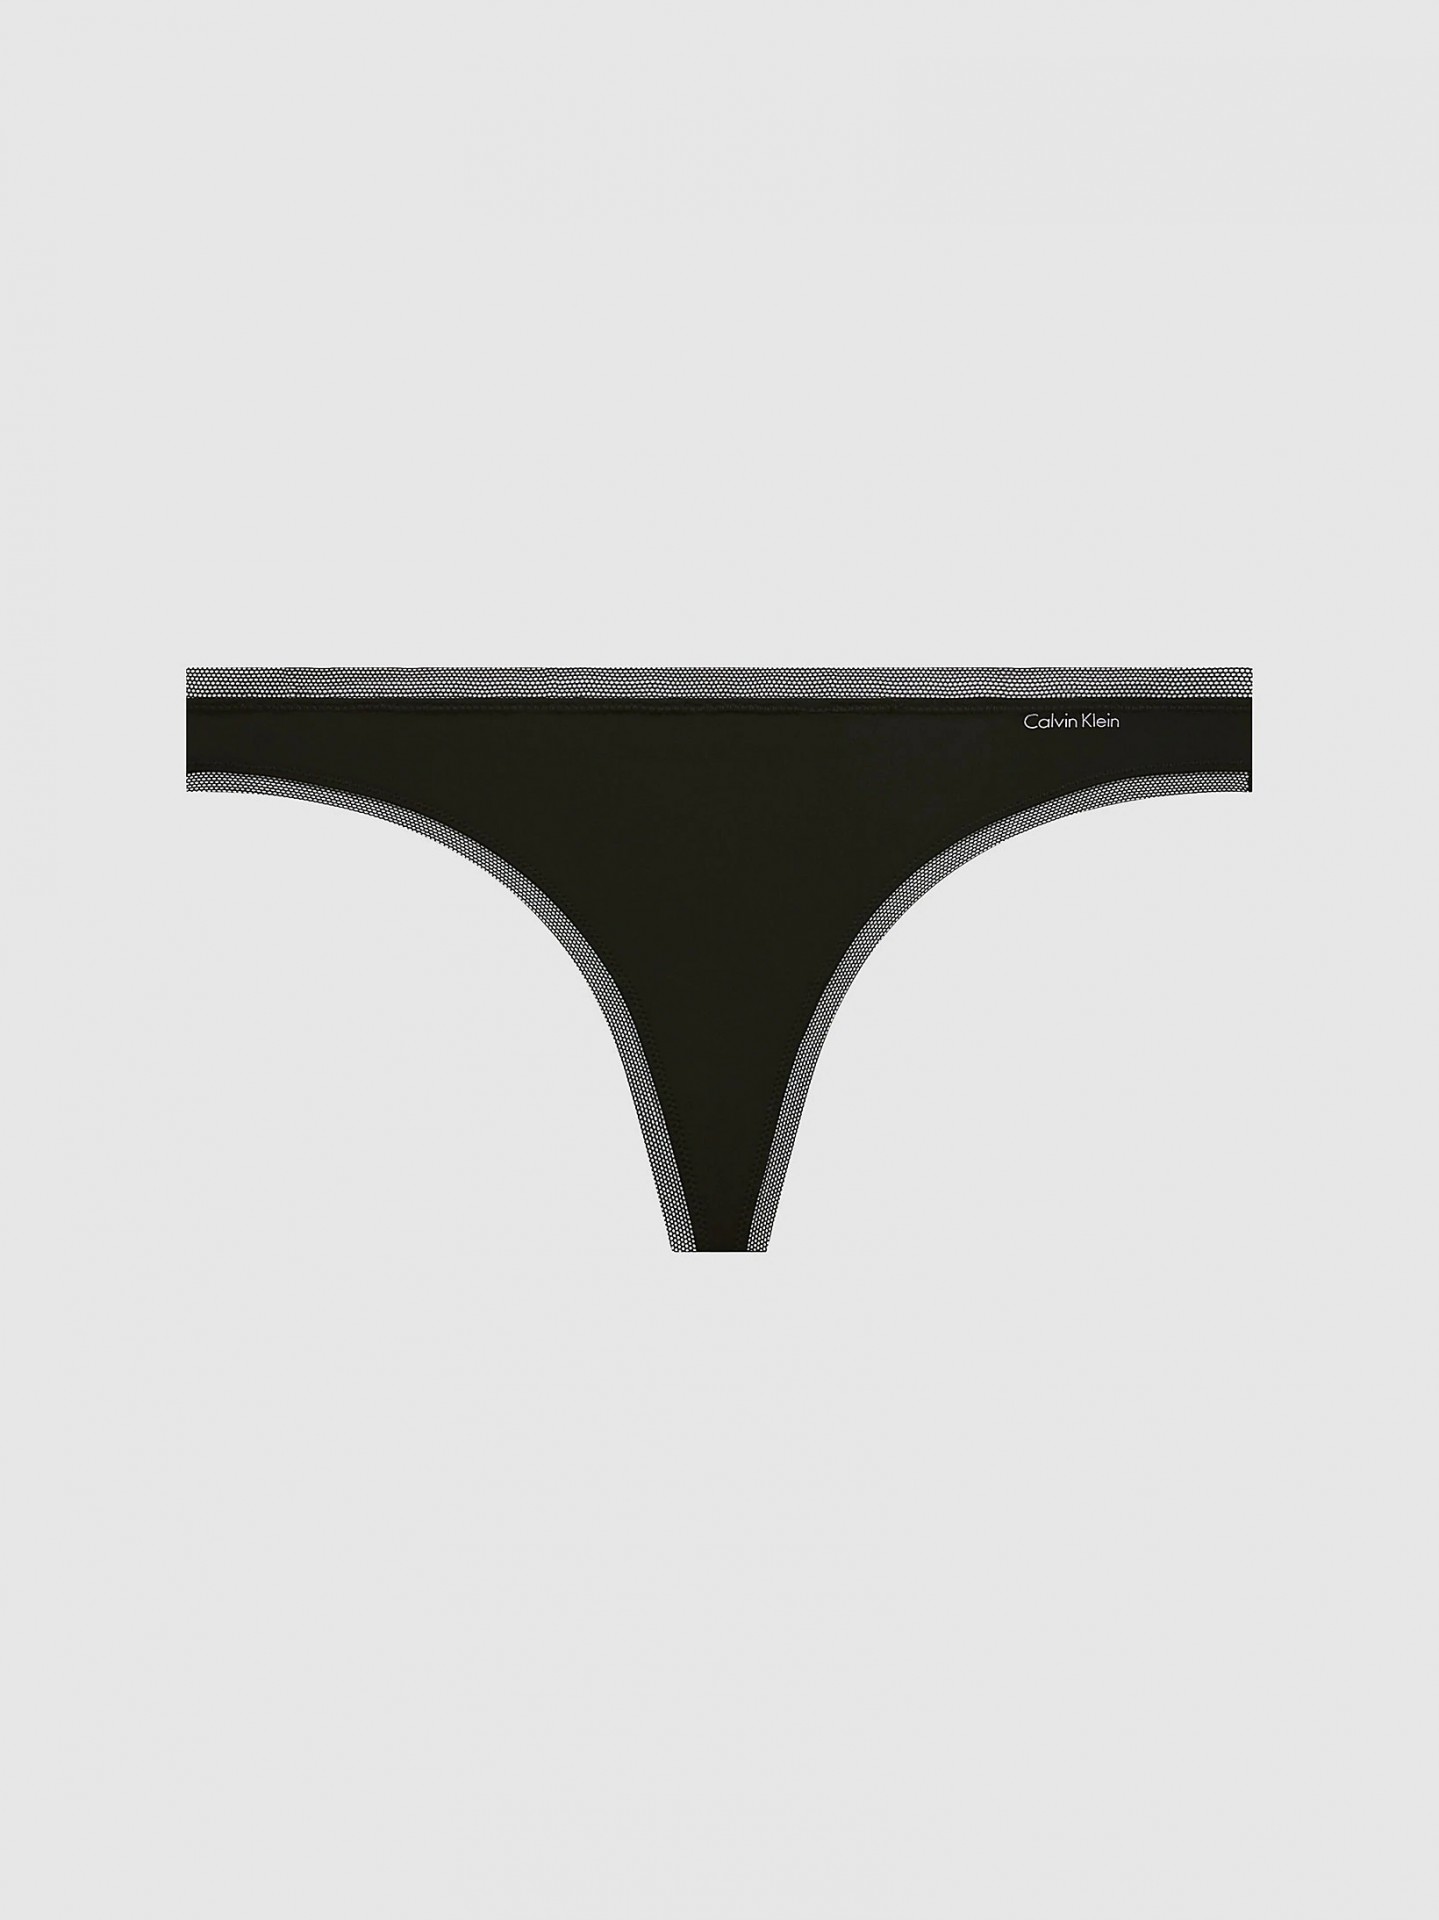 Tanga Calvin Klein (QF1666E-02), Velikost L, Barva černá